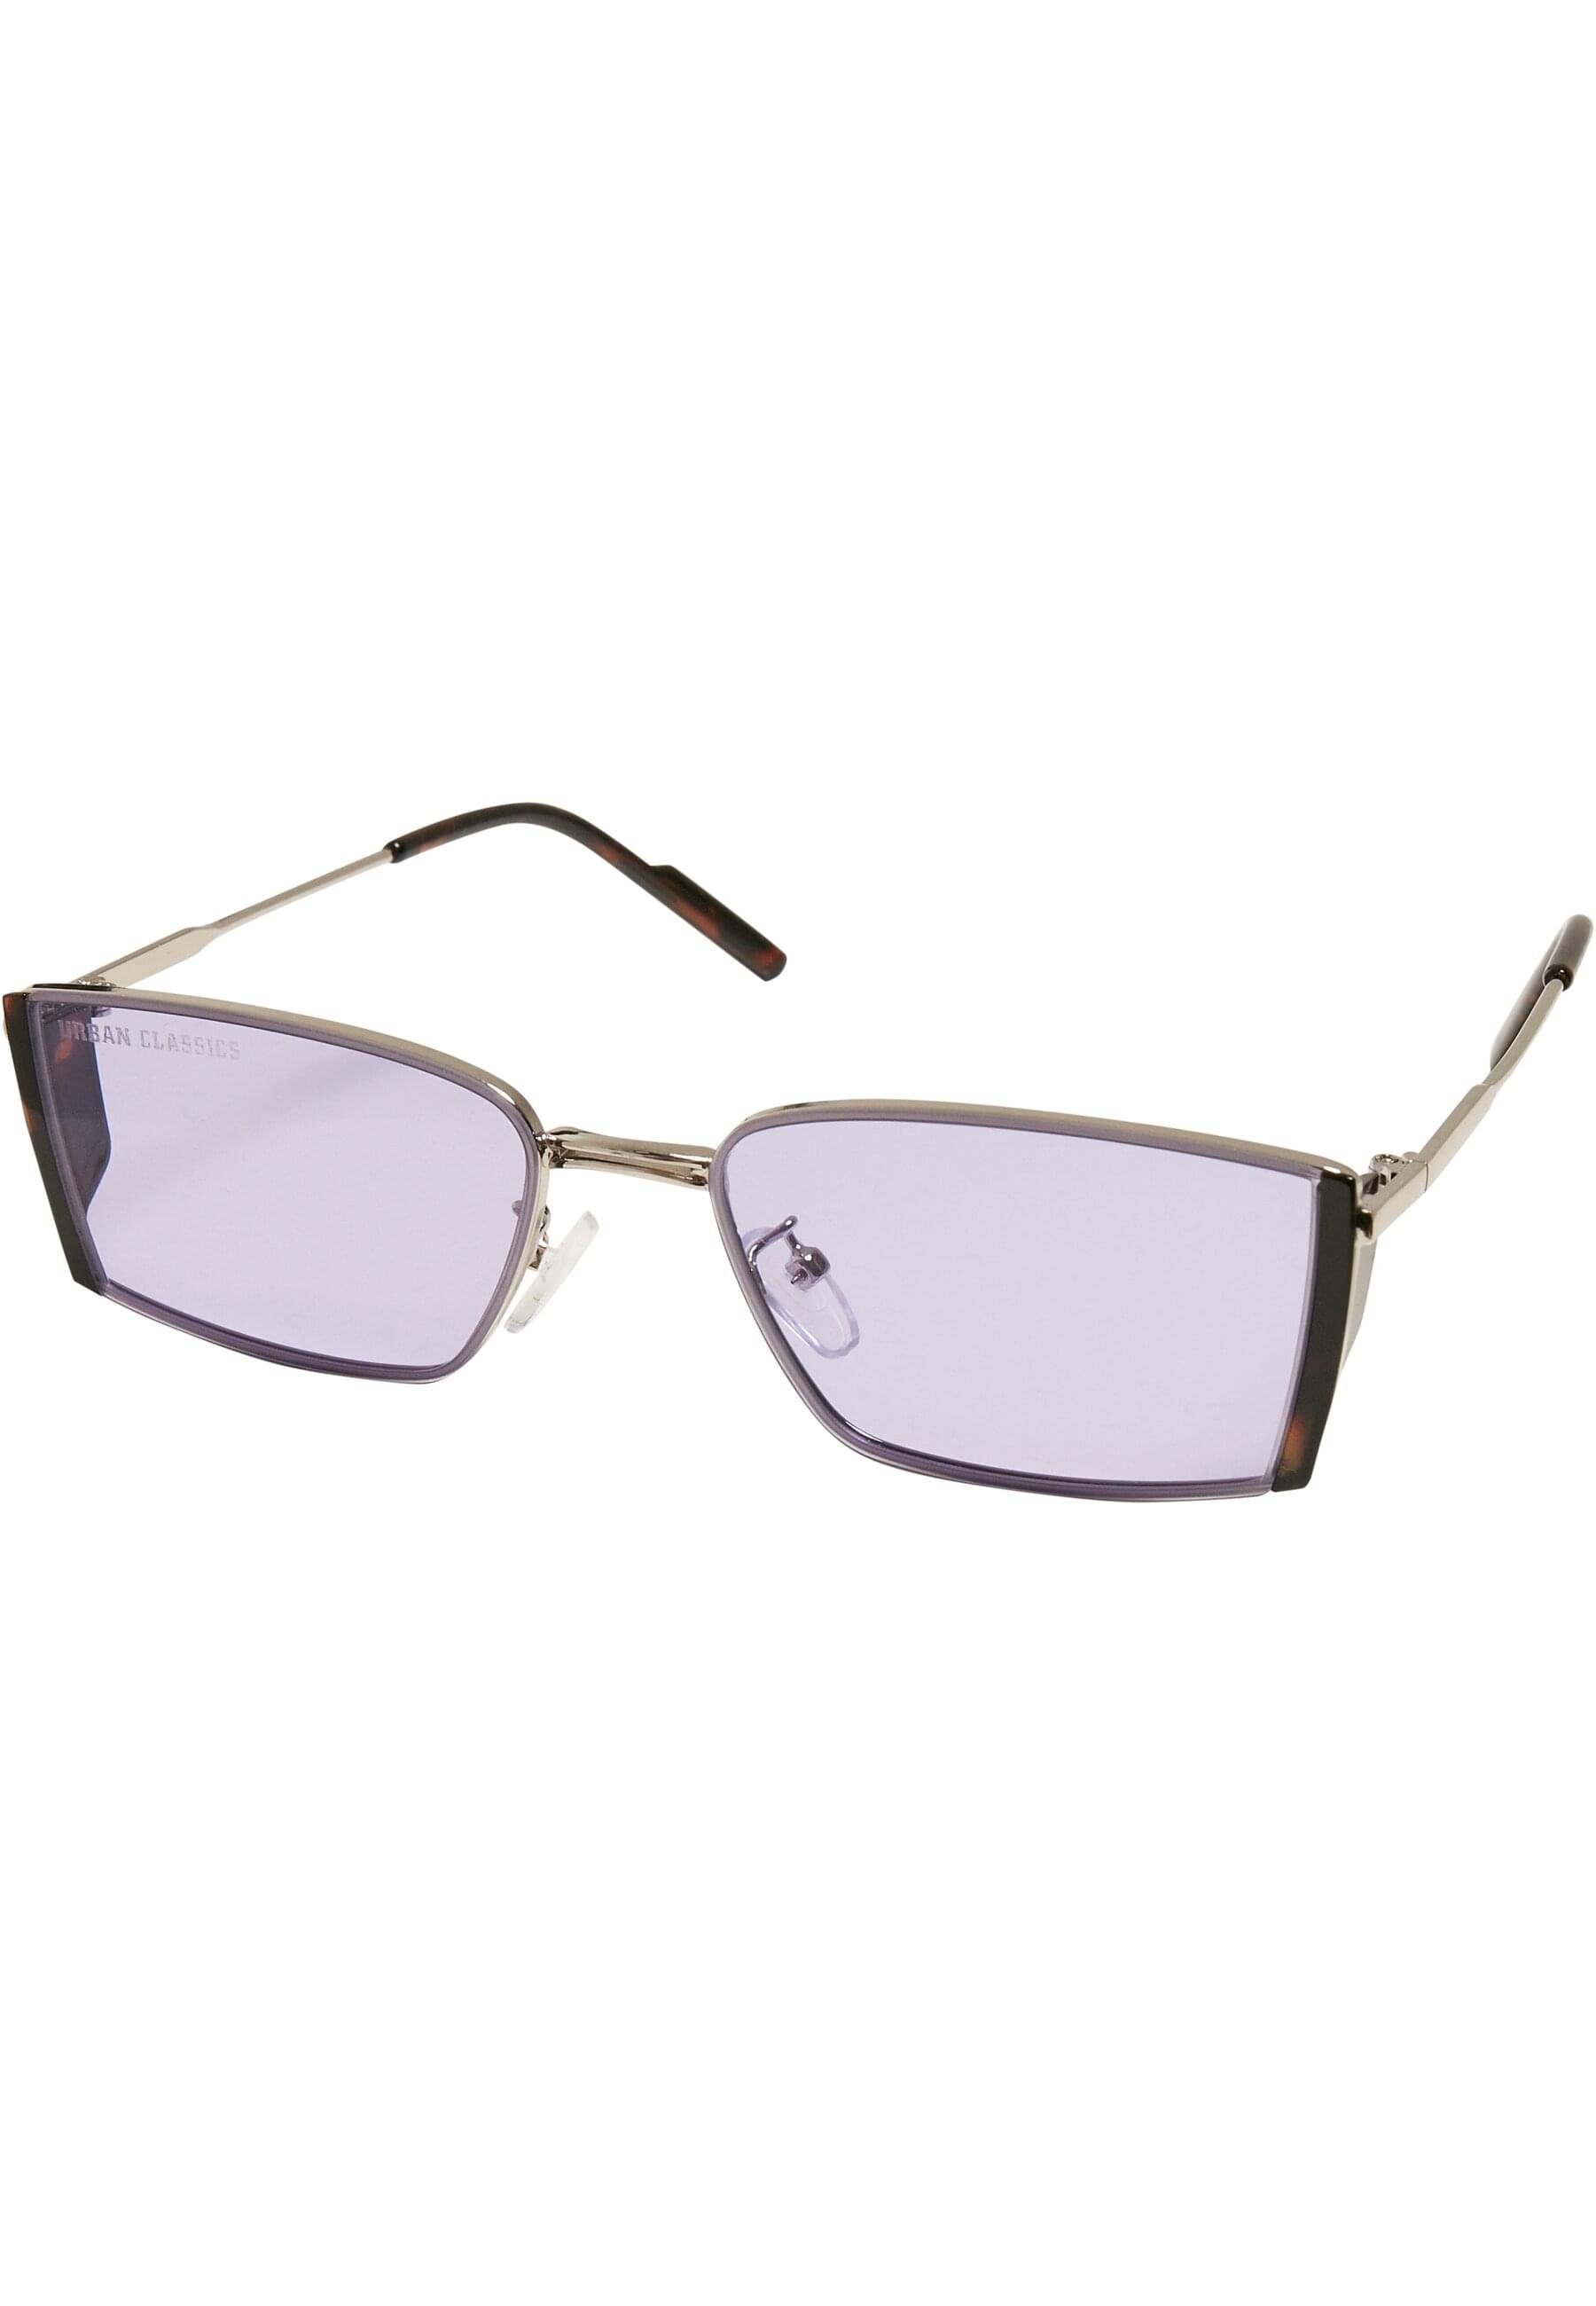 URBAN Sunglasses lilac/silver Unisex Sonnenbrille CLASSICS Ohio